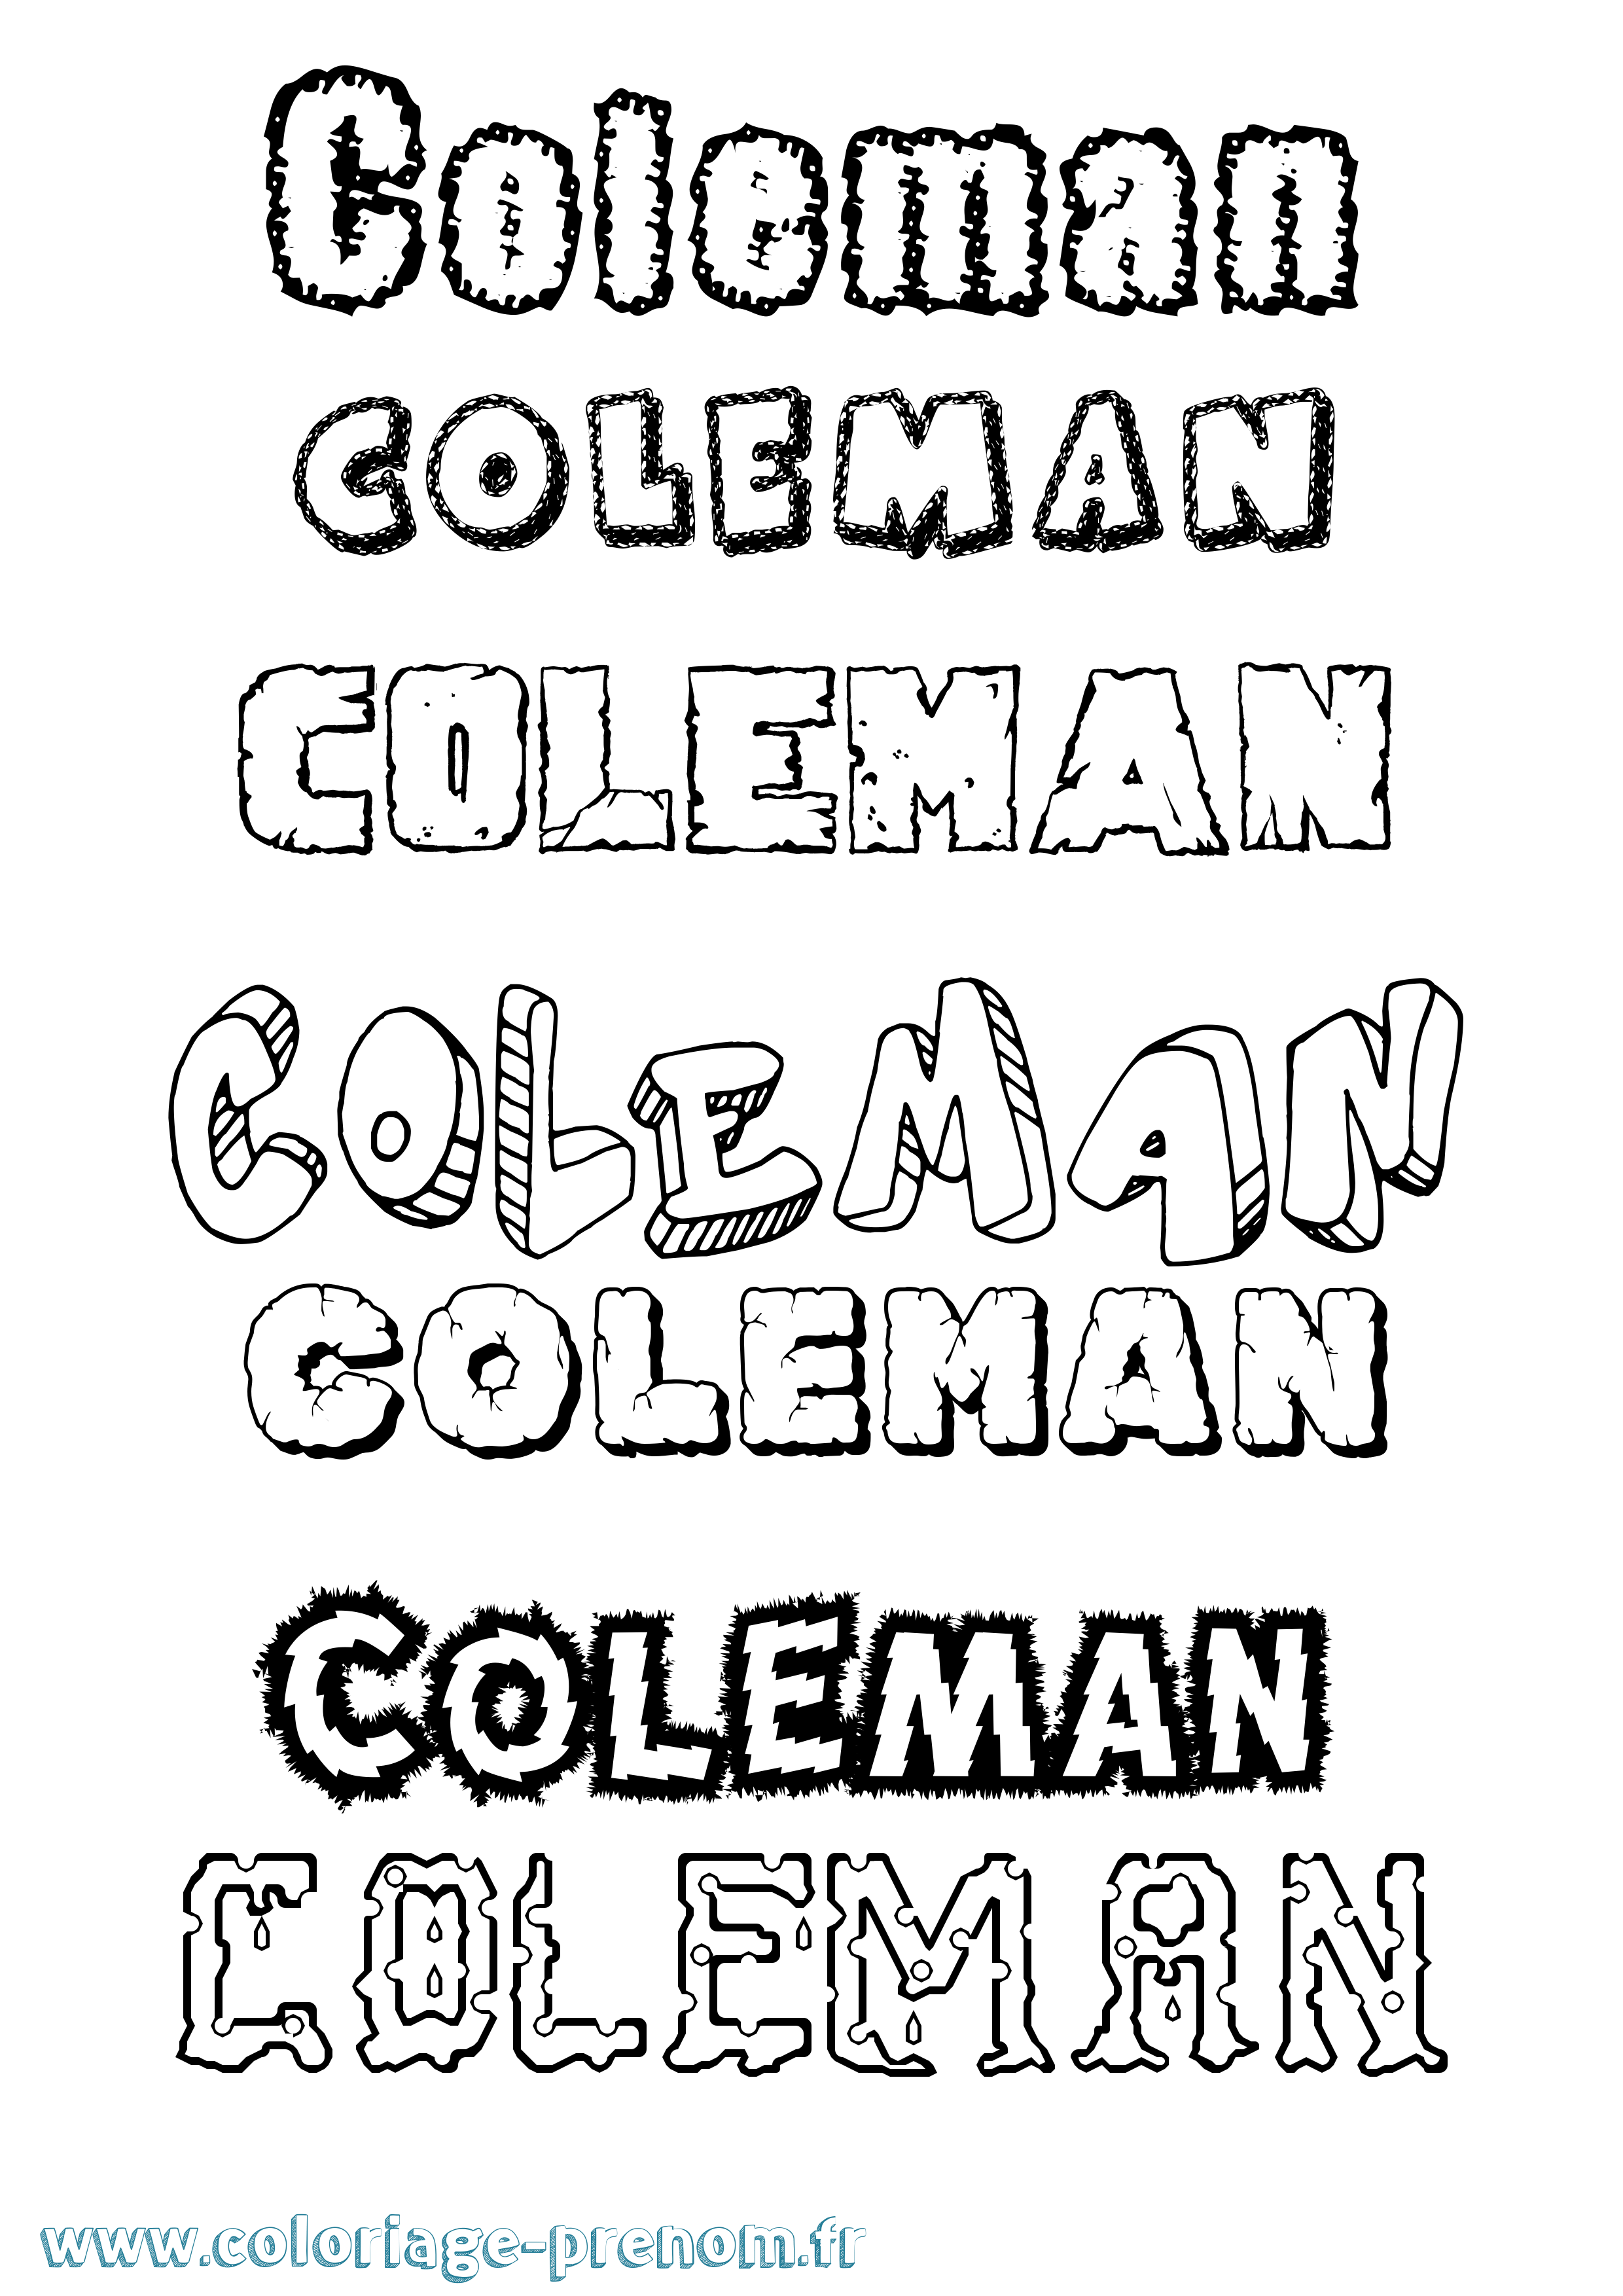 Coloriage prénom Coleman Destructuré